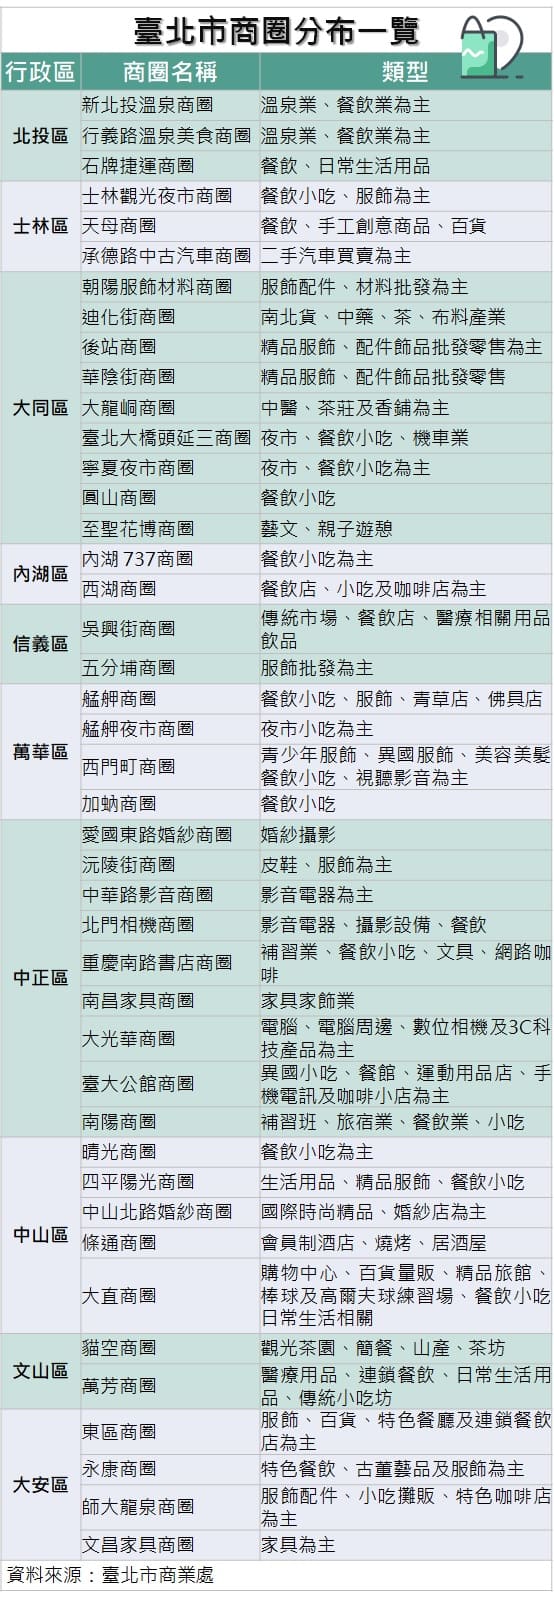 臺北市商圈分布一覽表